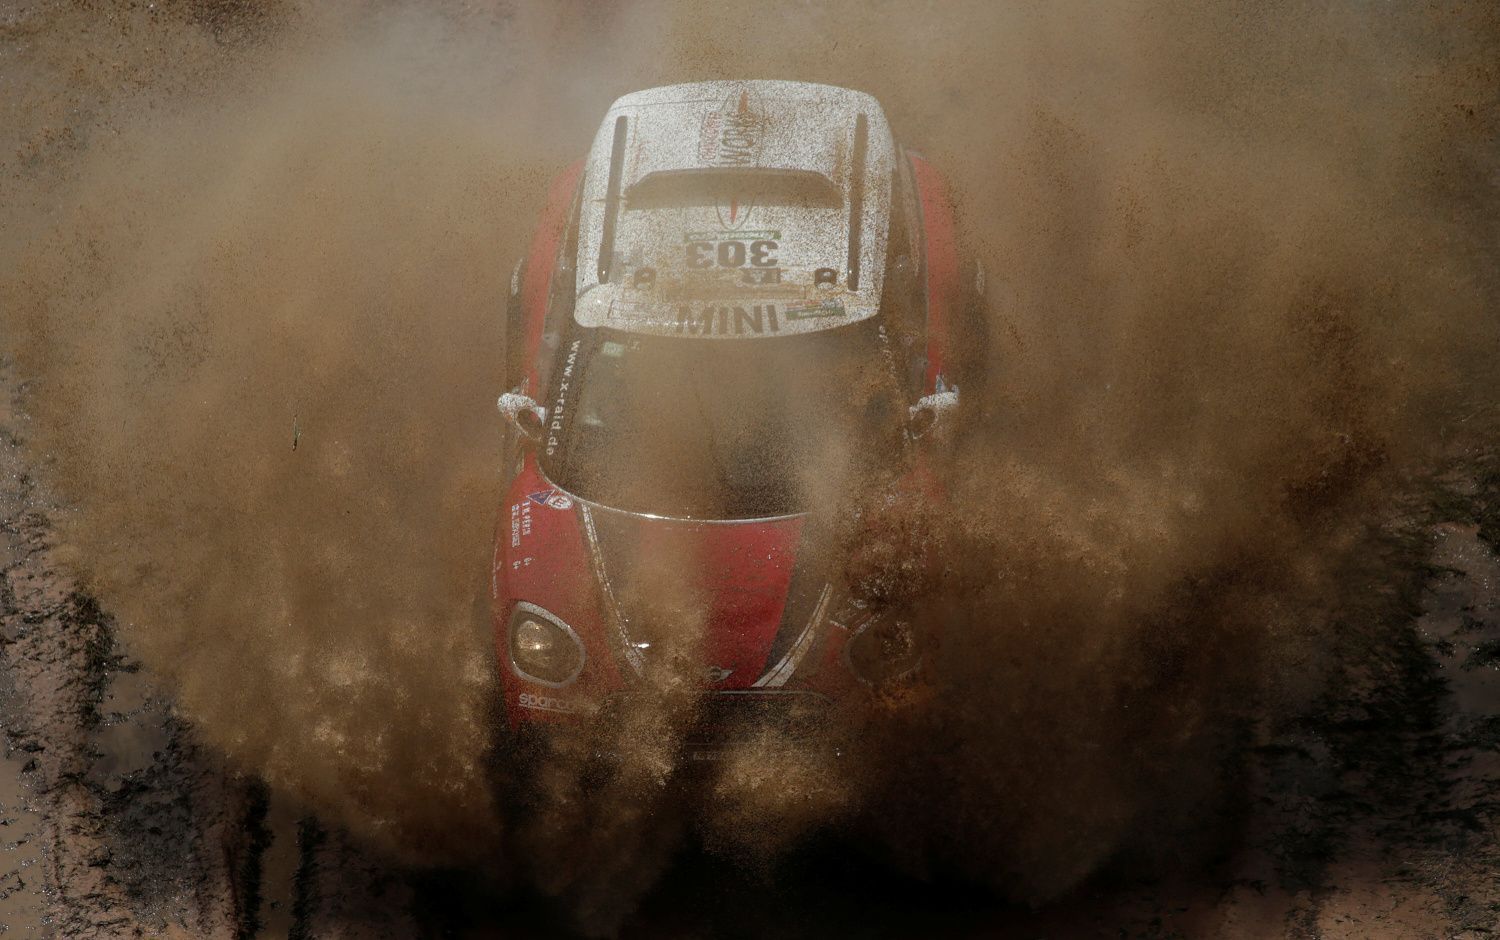 Rallye Dakar 2017, 1. etapa: Mikko Hirvonen, Mini